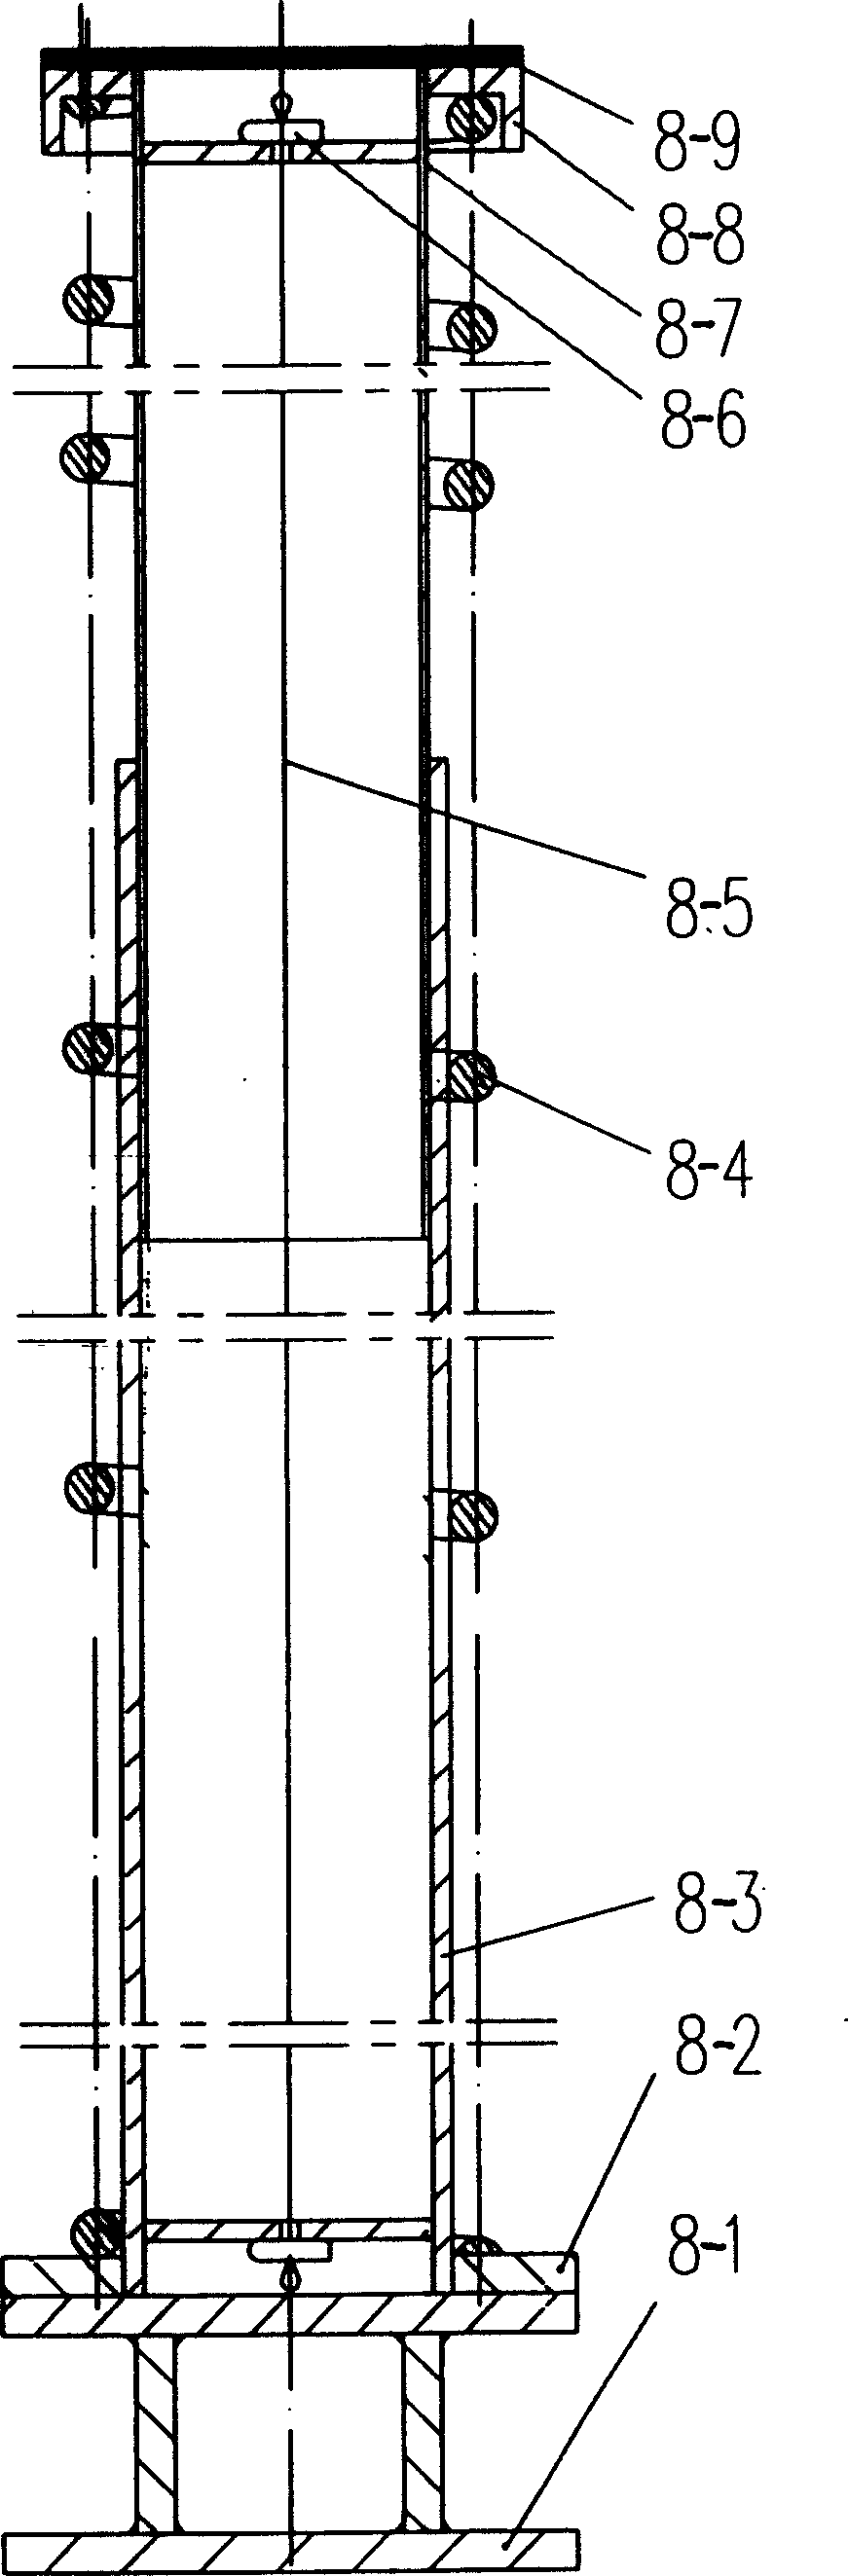 Scissor fork type mechanical lifting gear